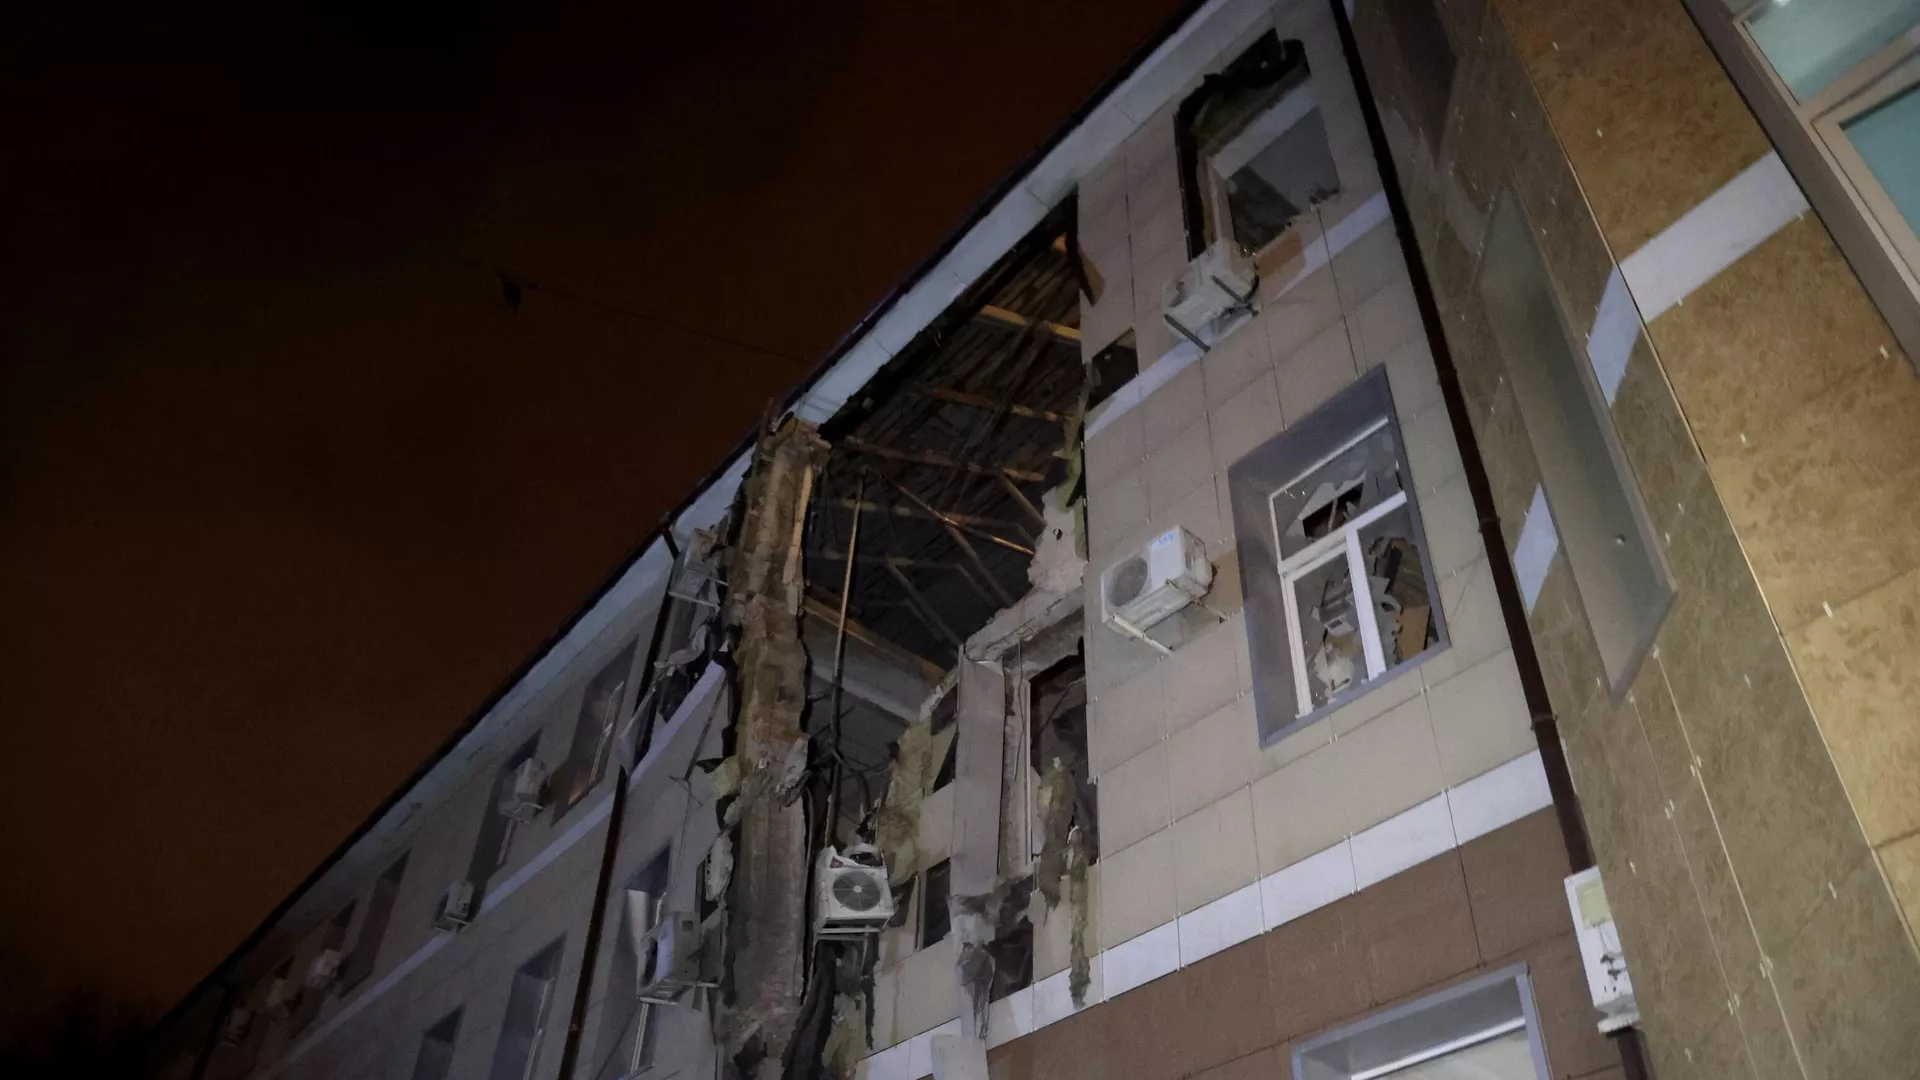 ԴԺՀ-ում 1 մարդ զոհվել է, 2-ը վիրավորվել են ուկրաինական զորքերի գնդակոծության հետևանքով